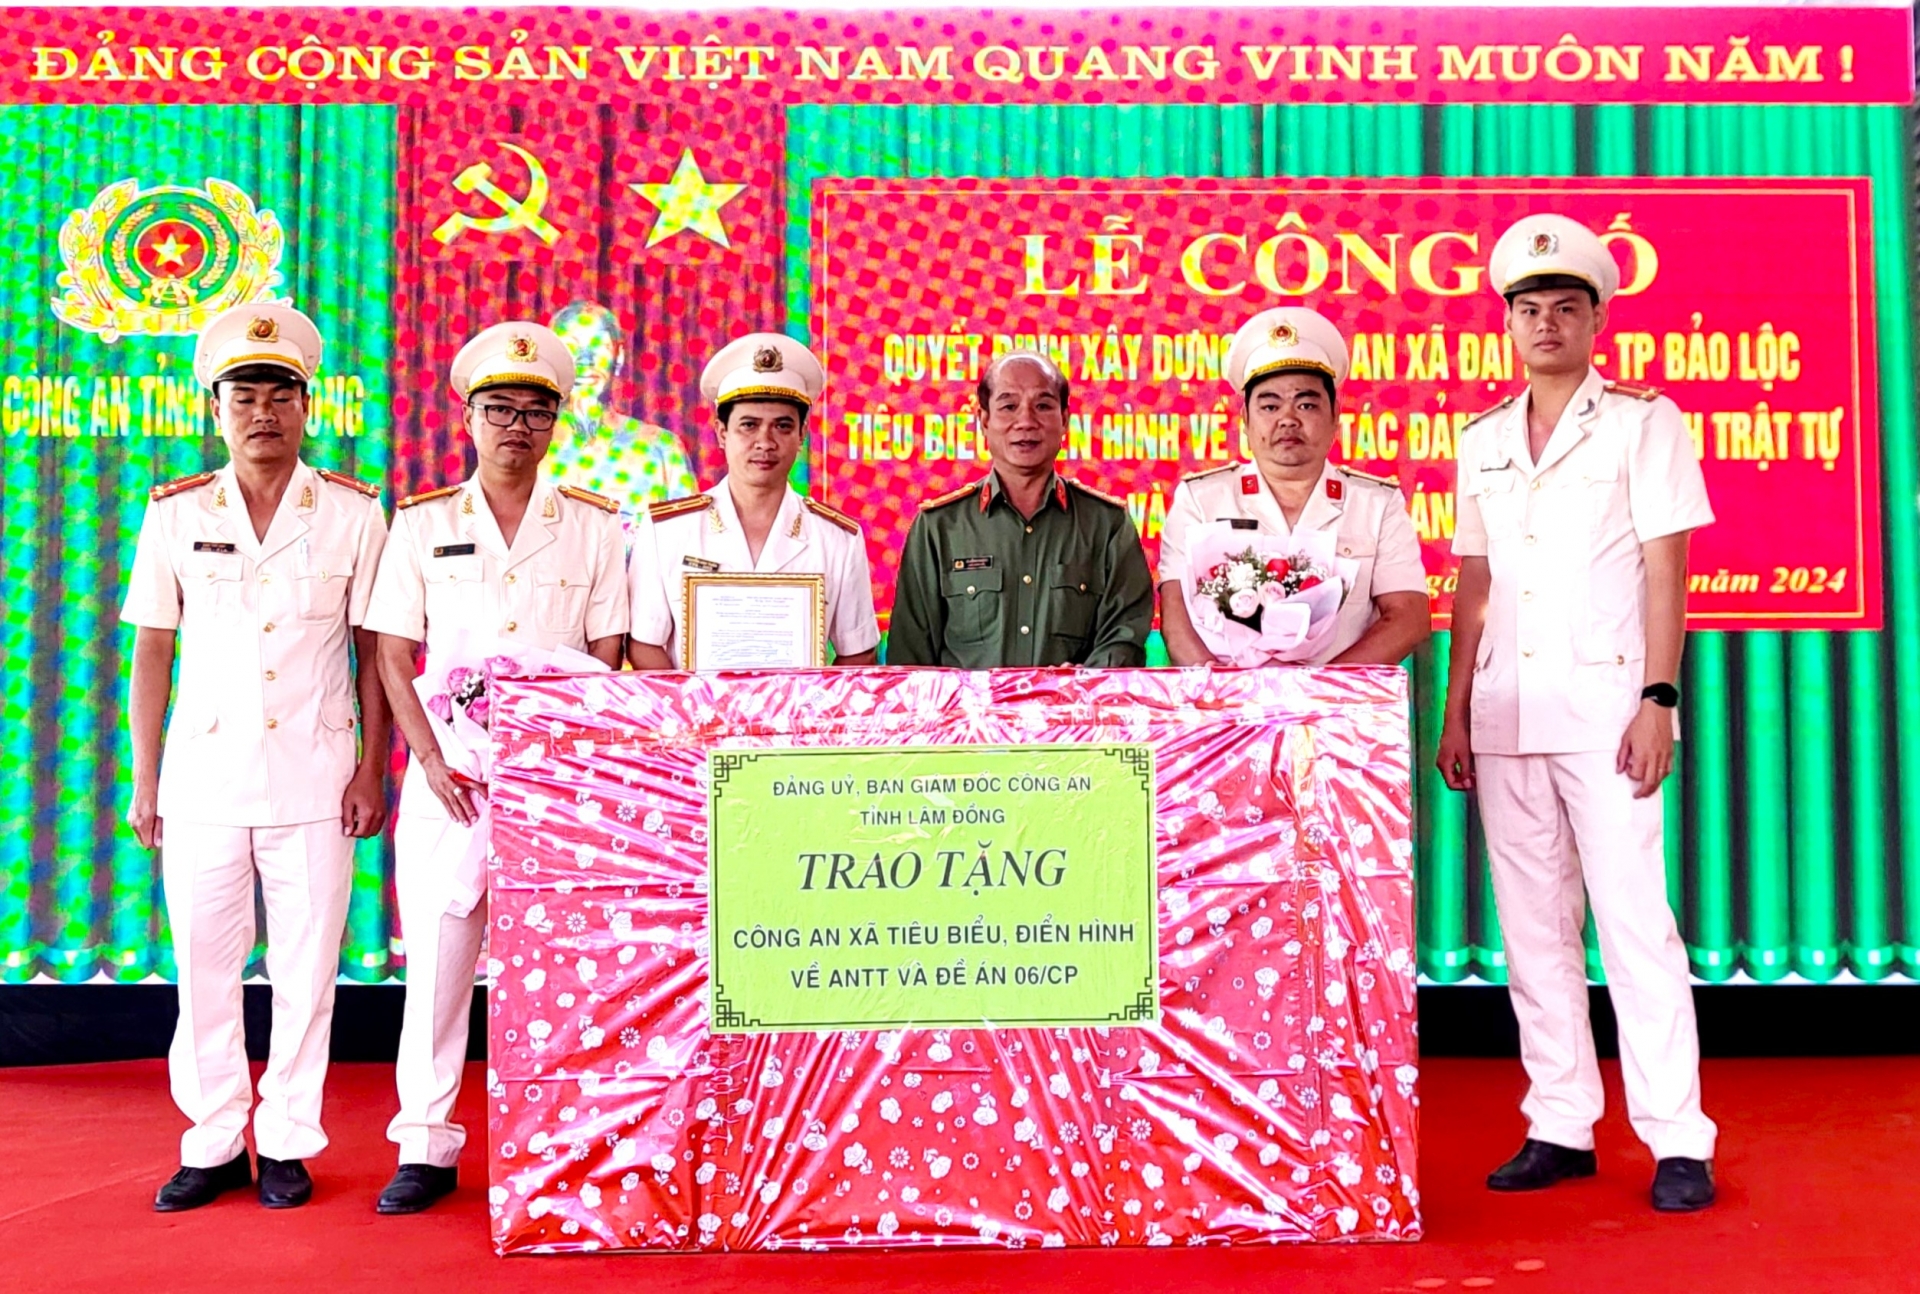 Đại tá Lê Hồng Phong - Phó Giám đốc Công an tỉnh Lâm Đồng tặng quà chúc mừng tập thể cán bộ, chiến sĩ Công an xã Đại Lào